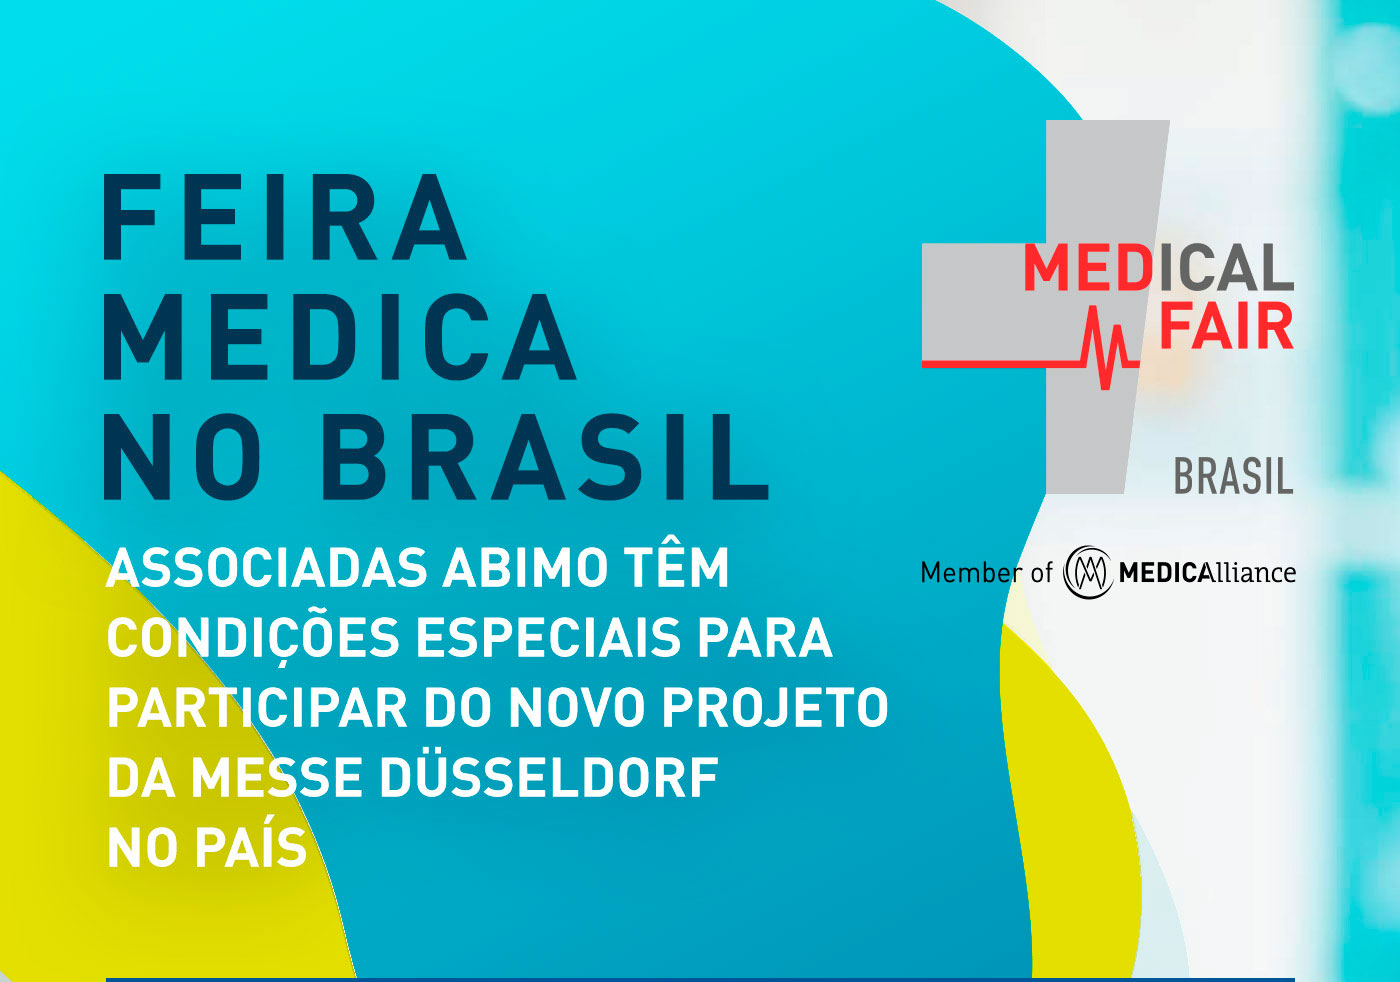 Feira MEDICA no Brasil